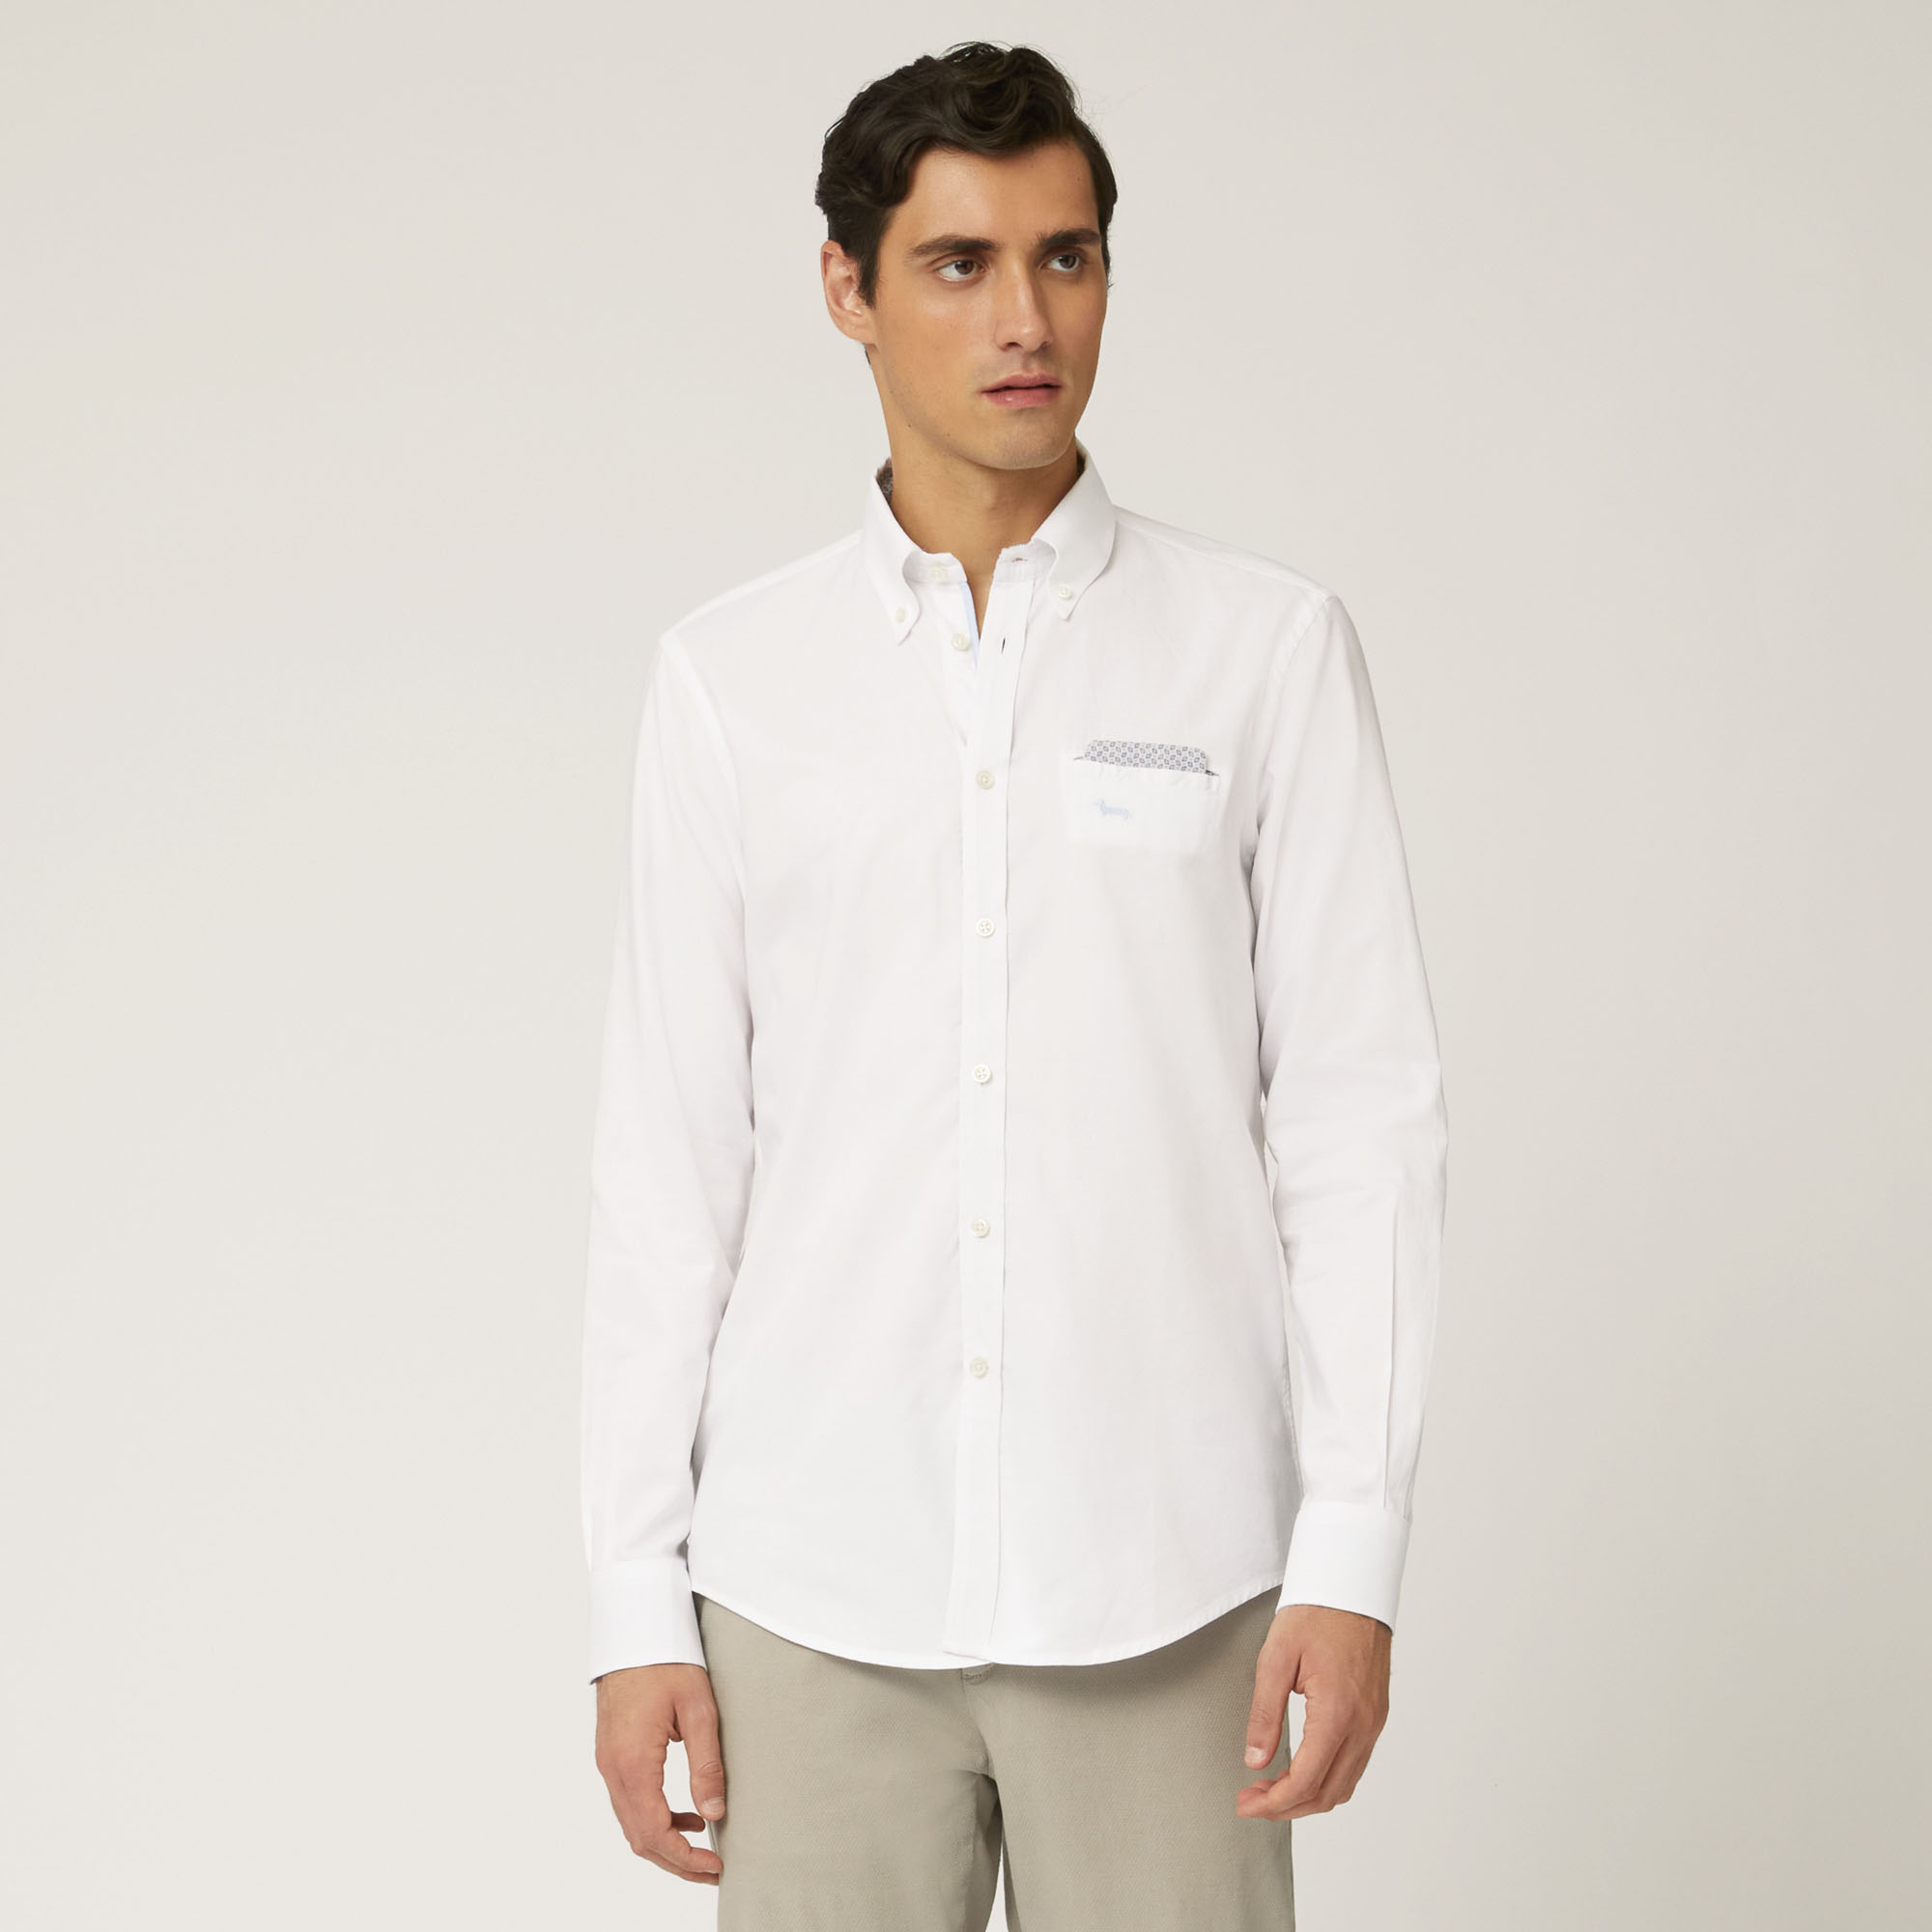 Camicia In Cotone Con Taschino A Filetto, Bianco, large